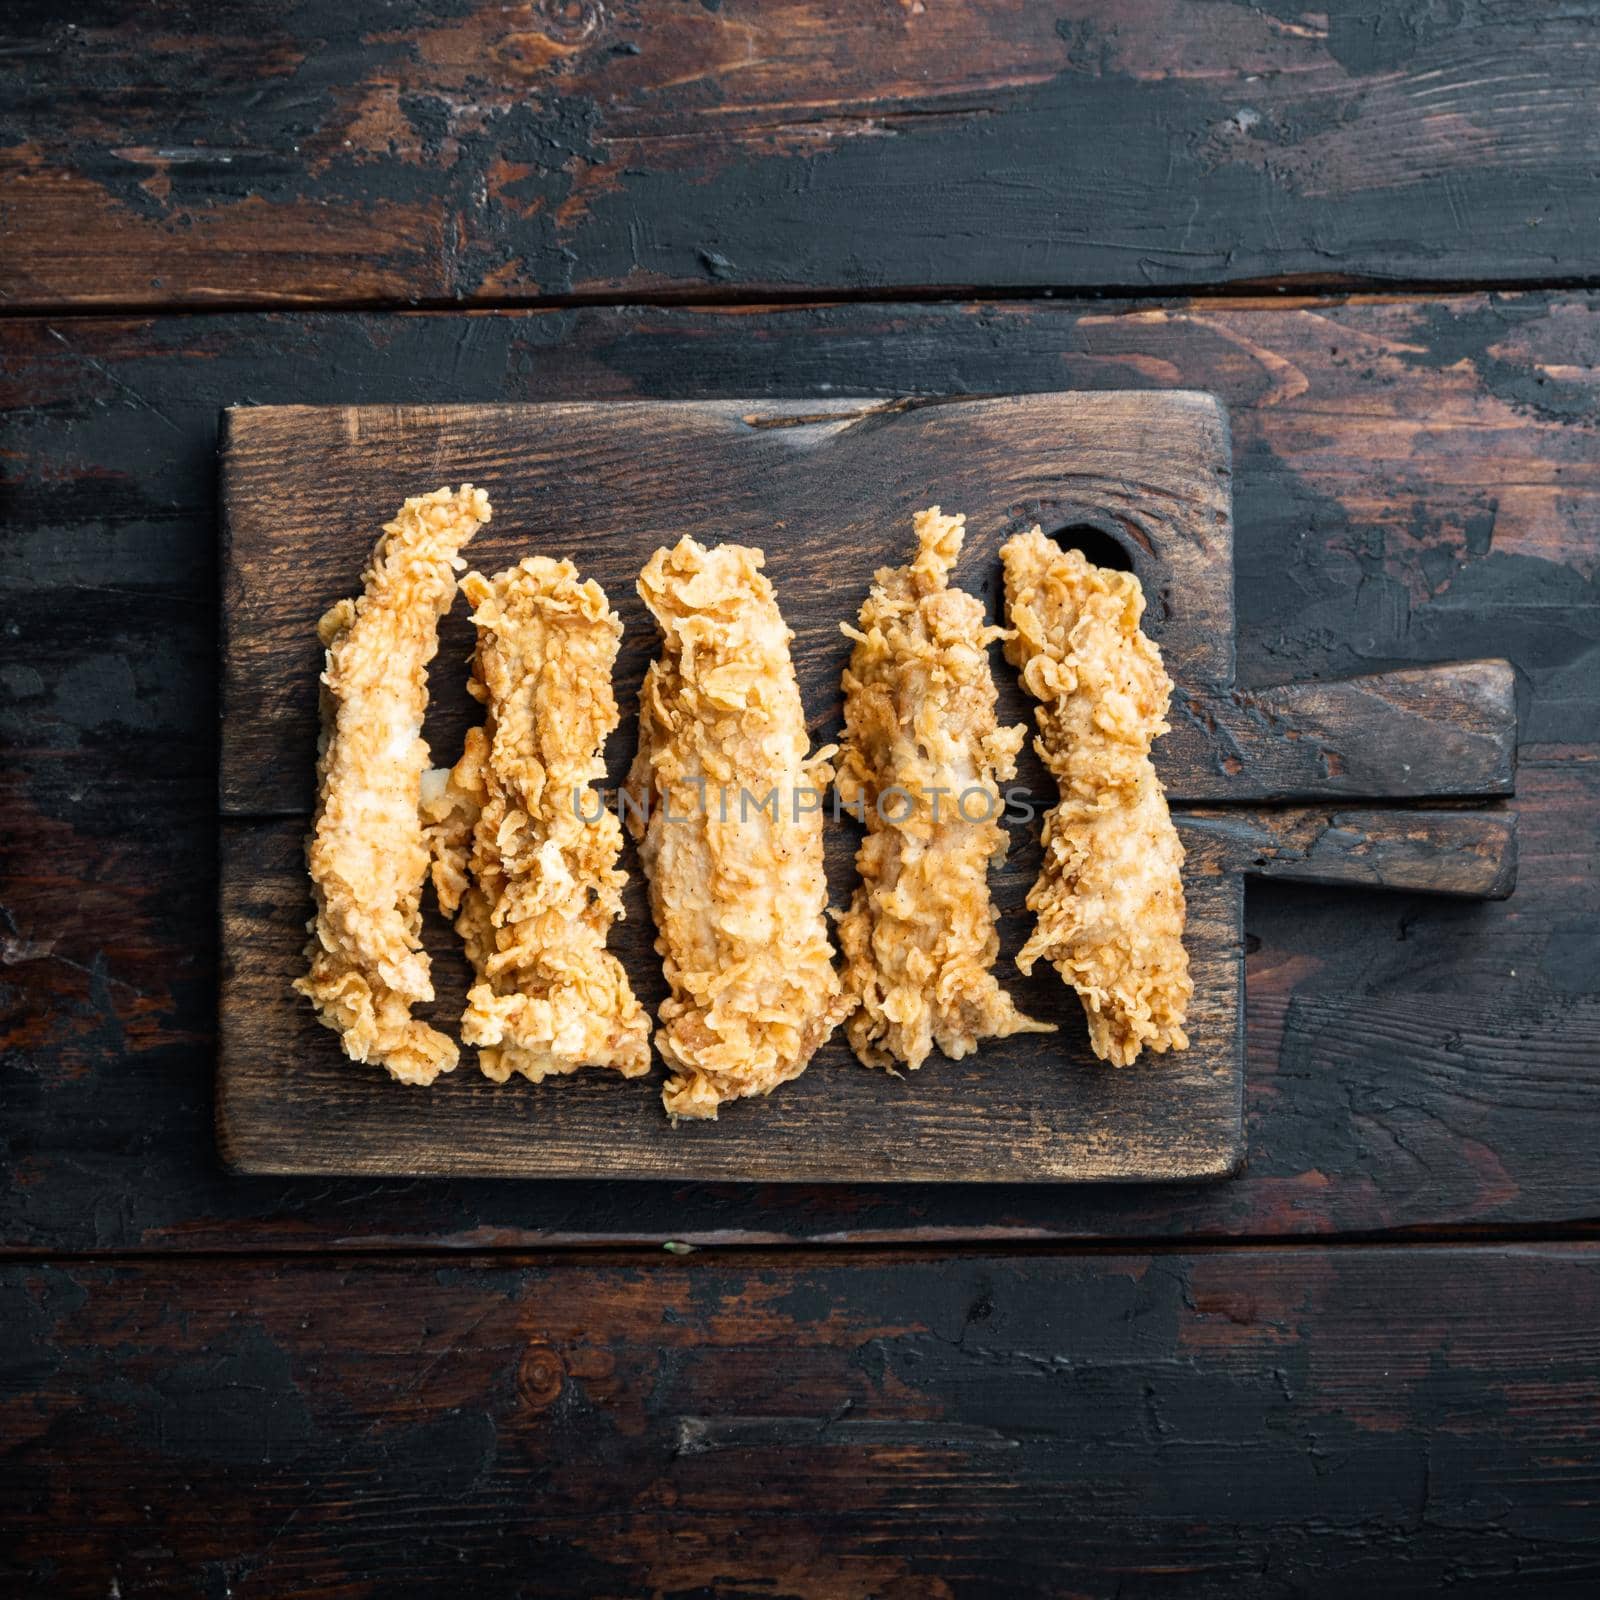 Crispy chicken sticks on dark wooden background, top view by Ilianesolenyi